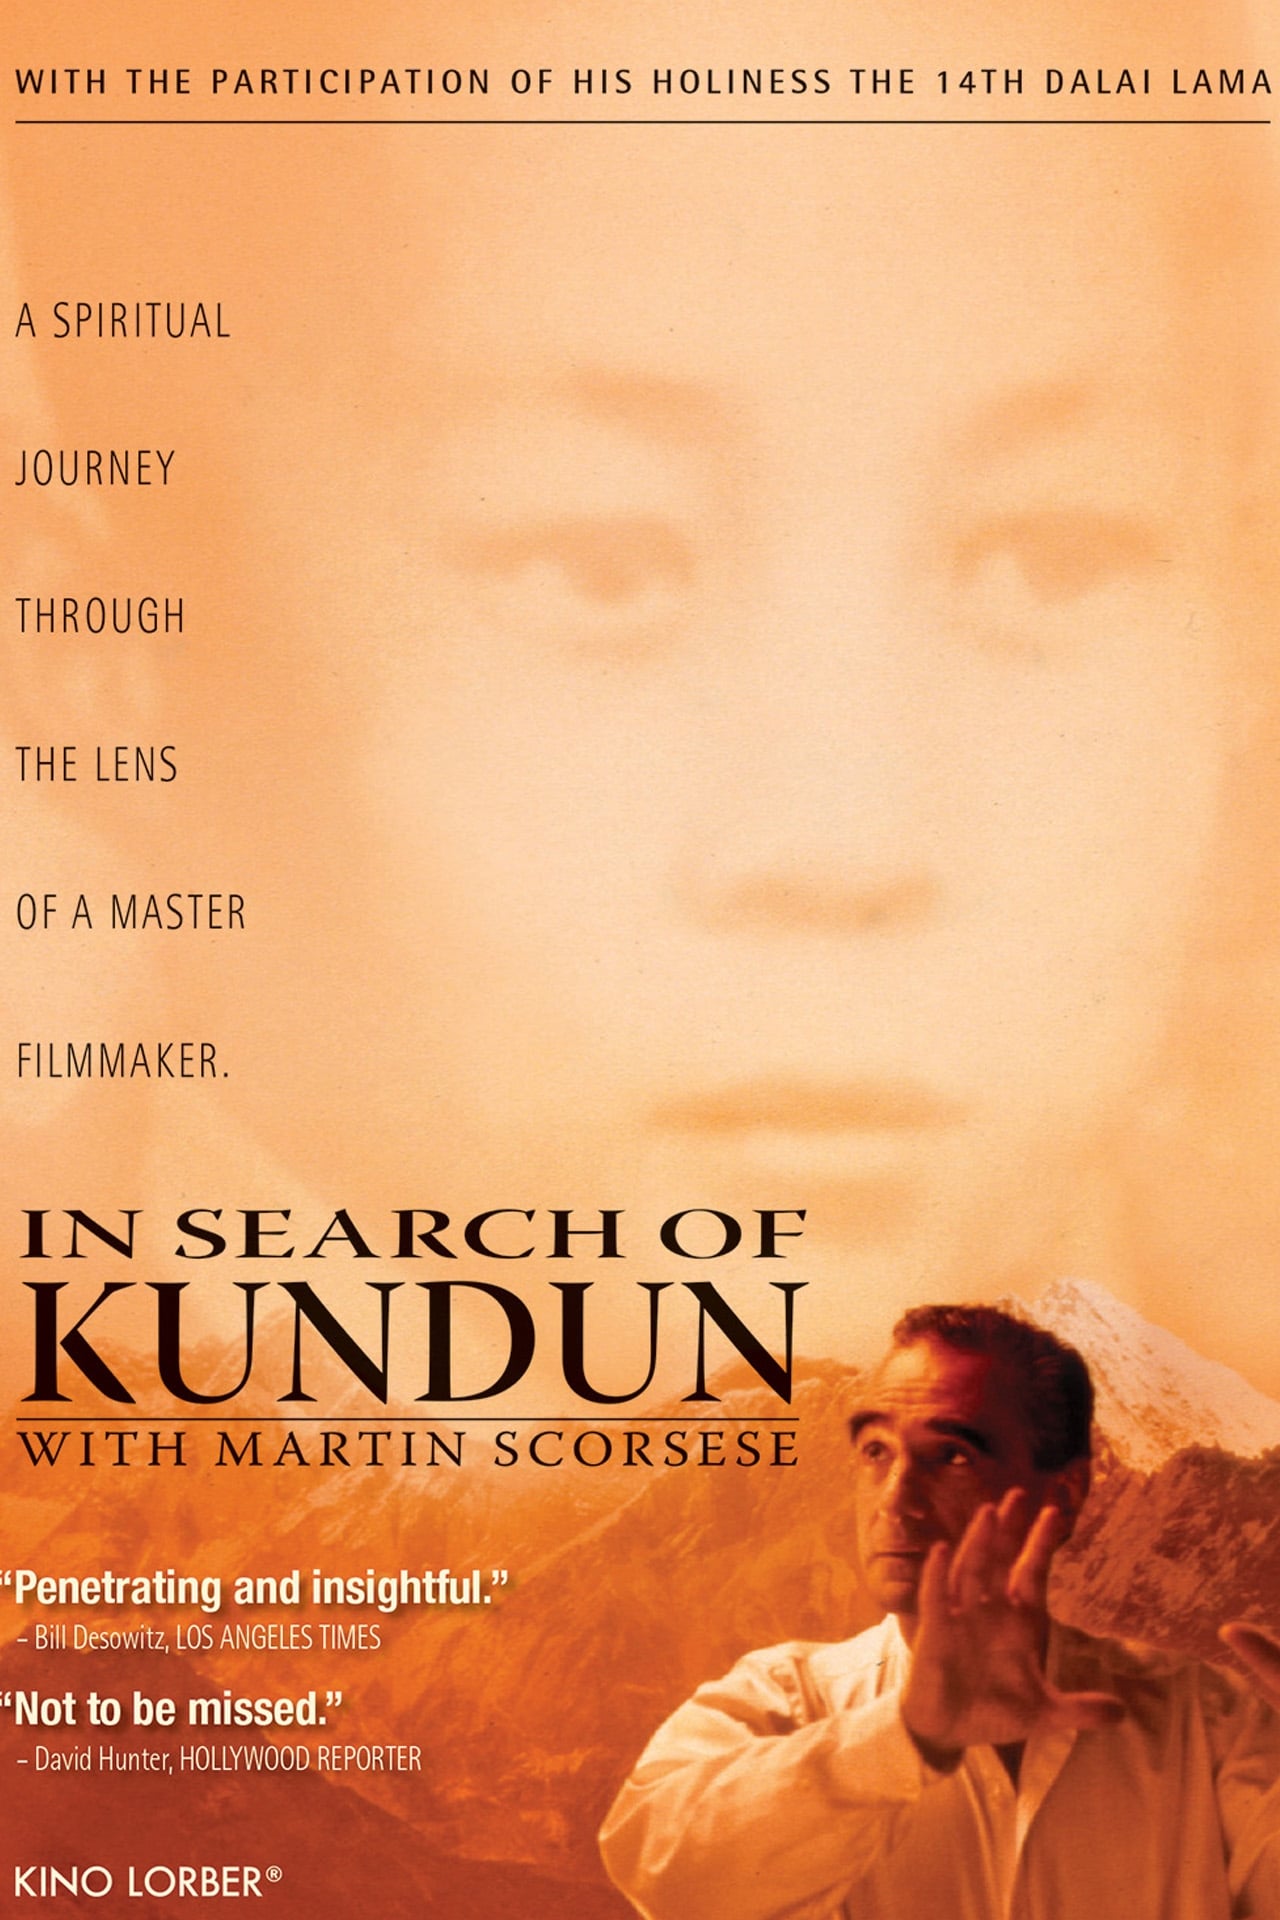 In Search of Kundun with Martin Scorsese (1998)